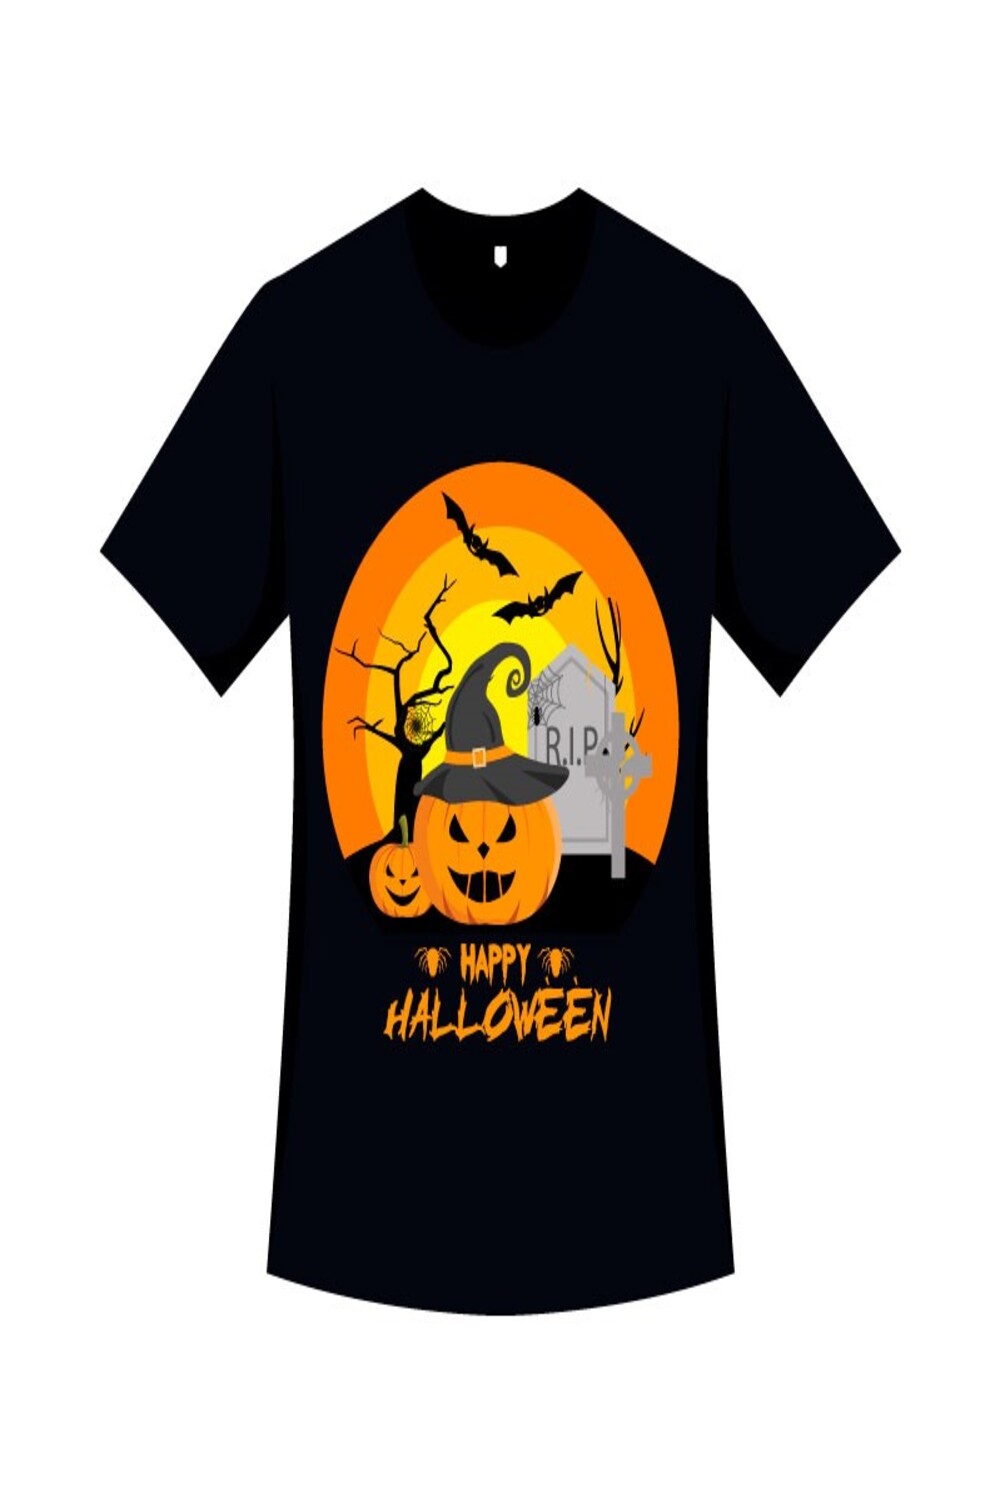 Halloween T-shirt Design with Pumpkin pinterest image.